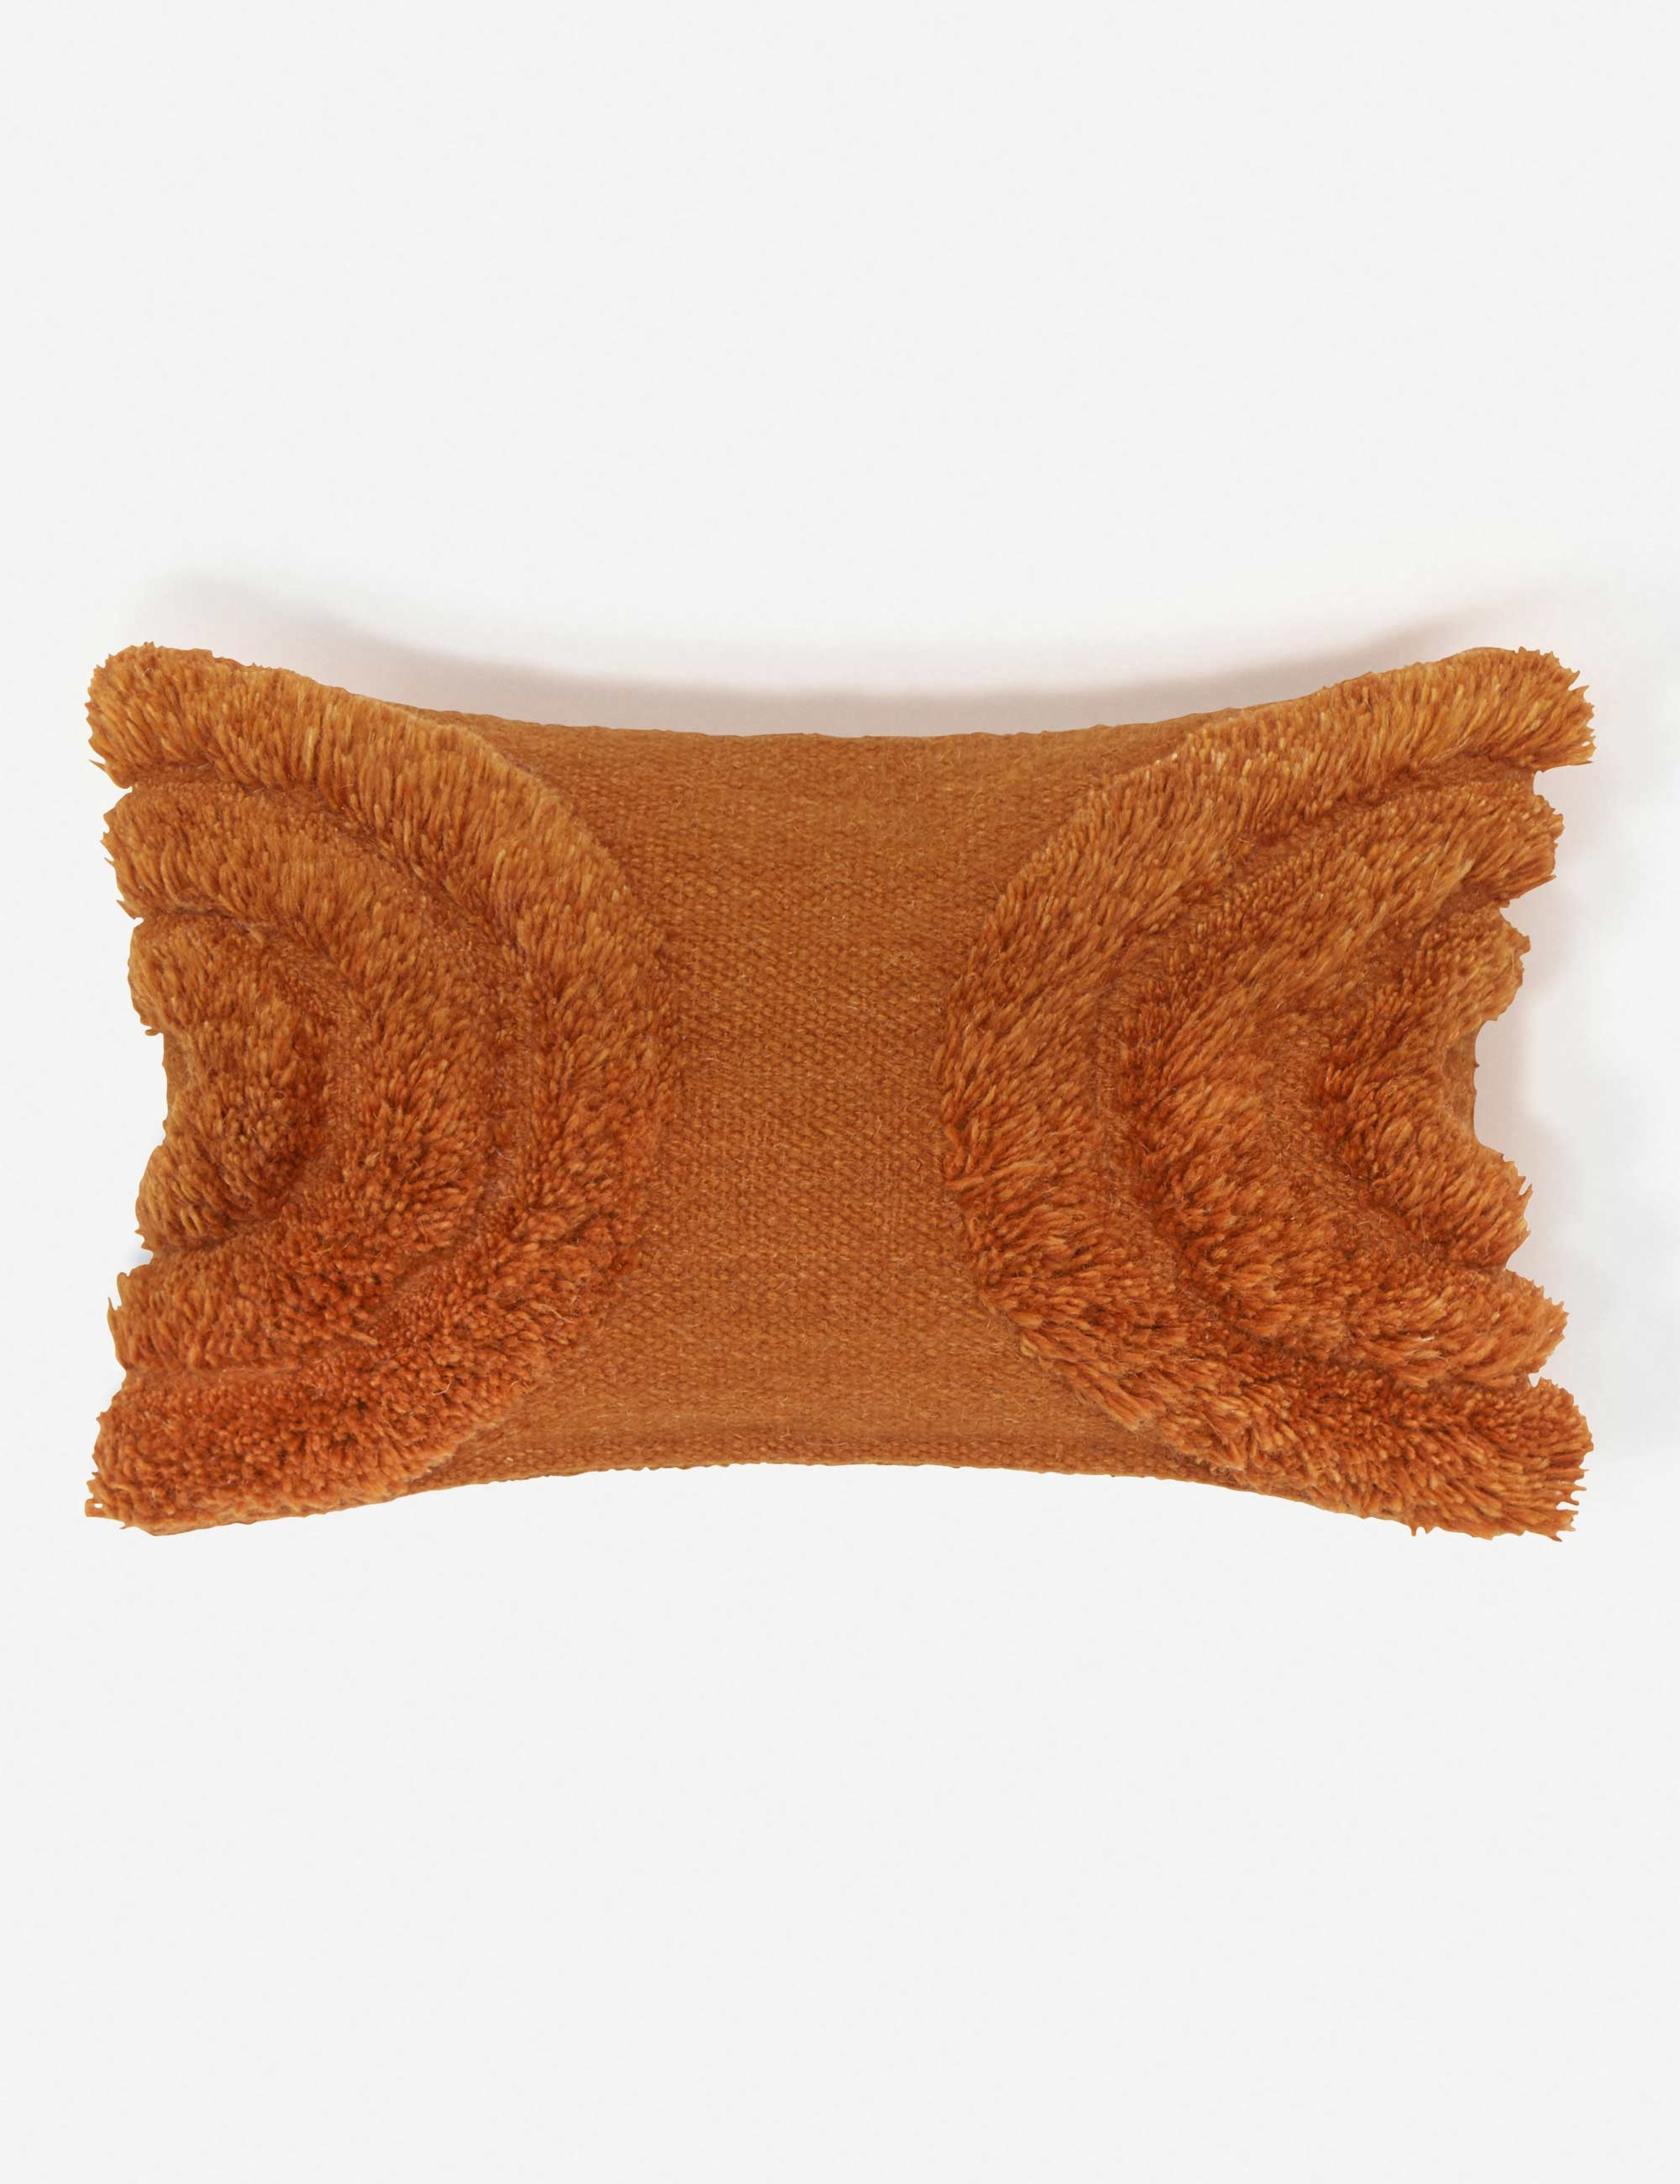 Arches Lumbar Pillow, Rust By Sarah Sherman Samuel - Lulu and Georgia